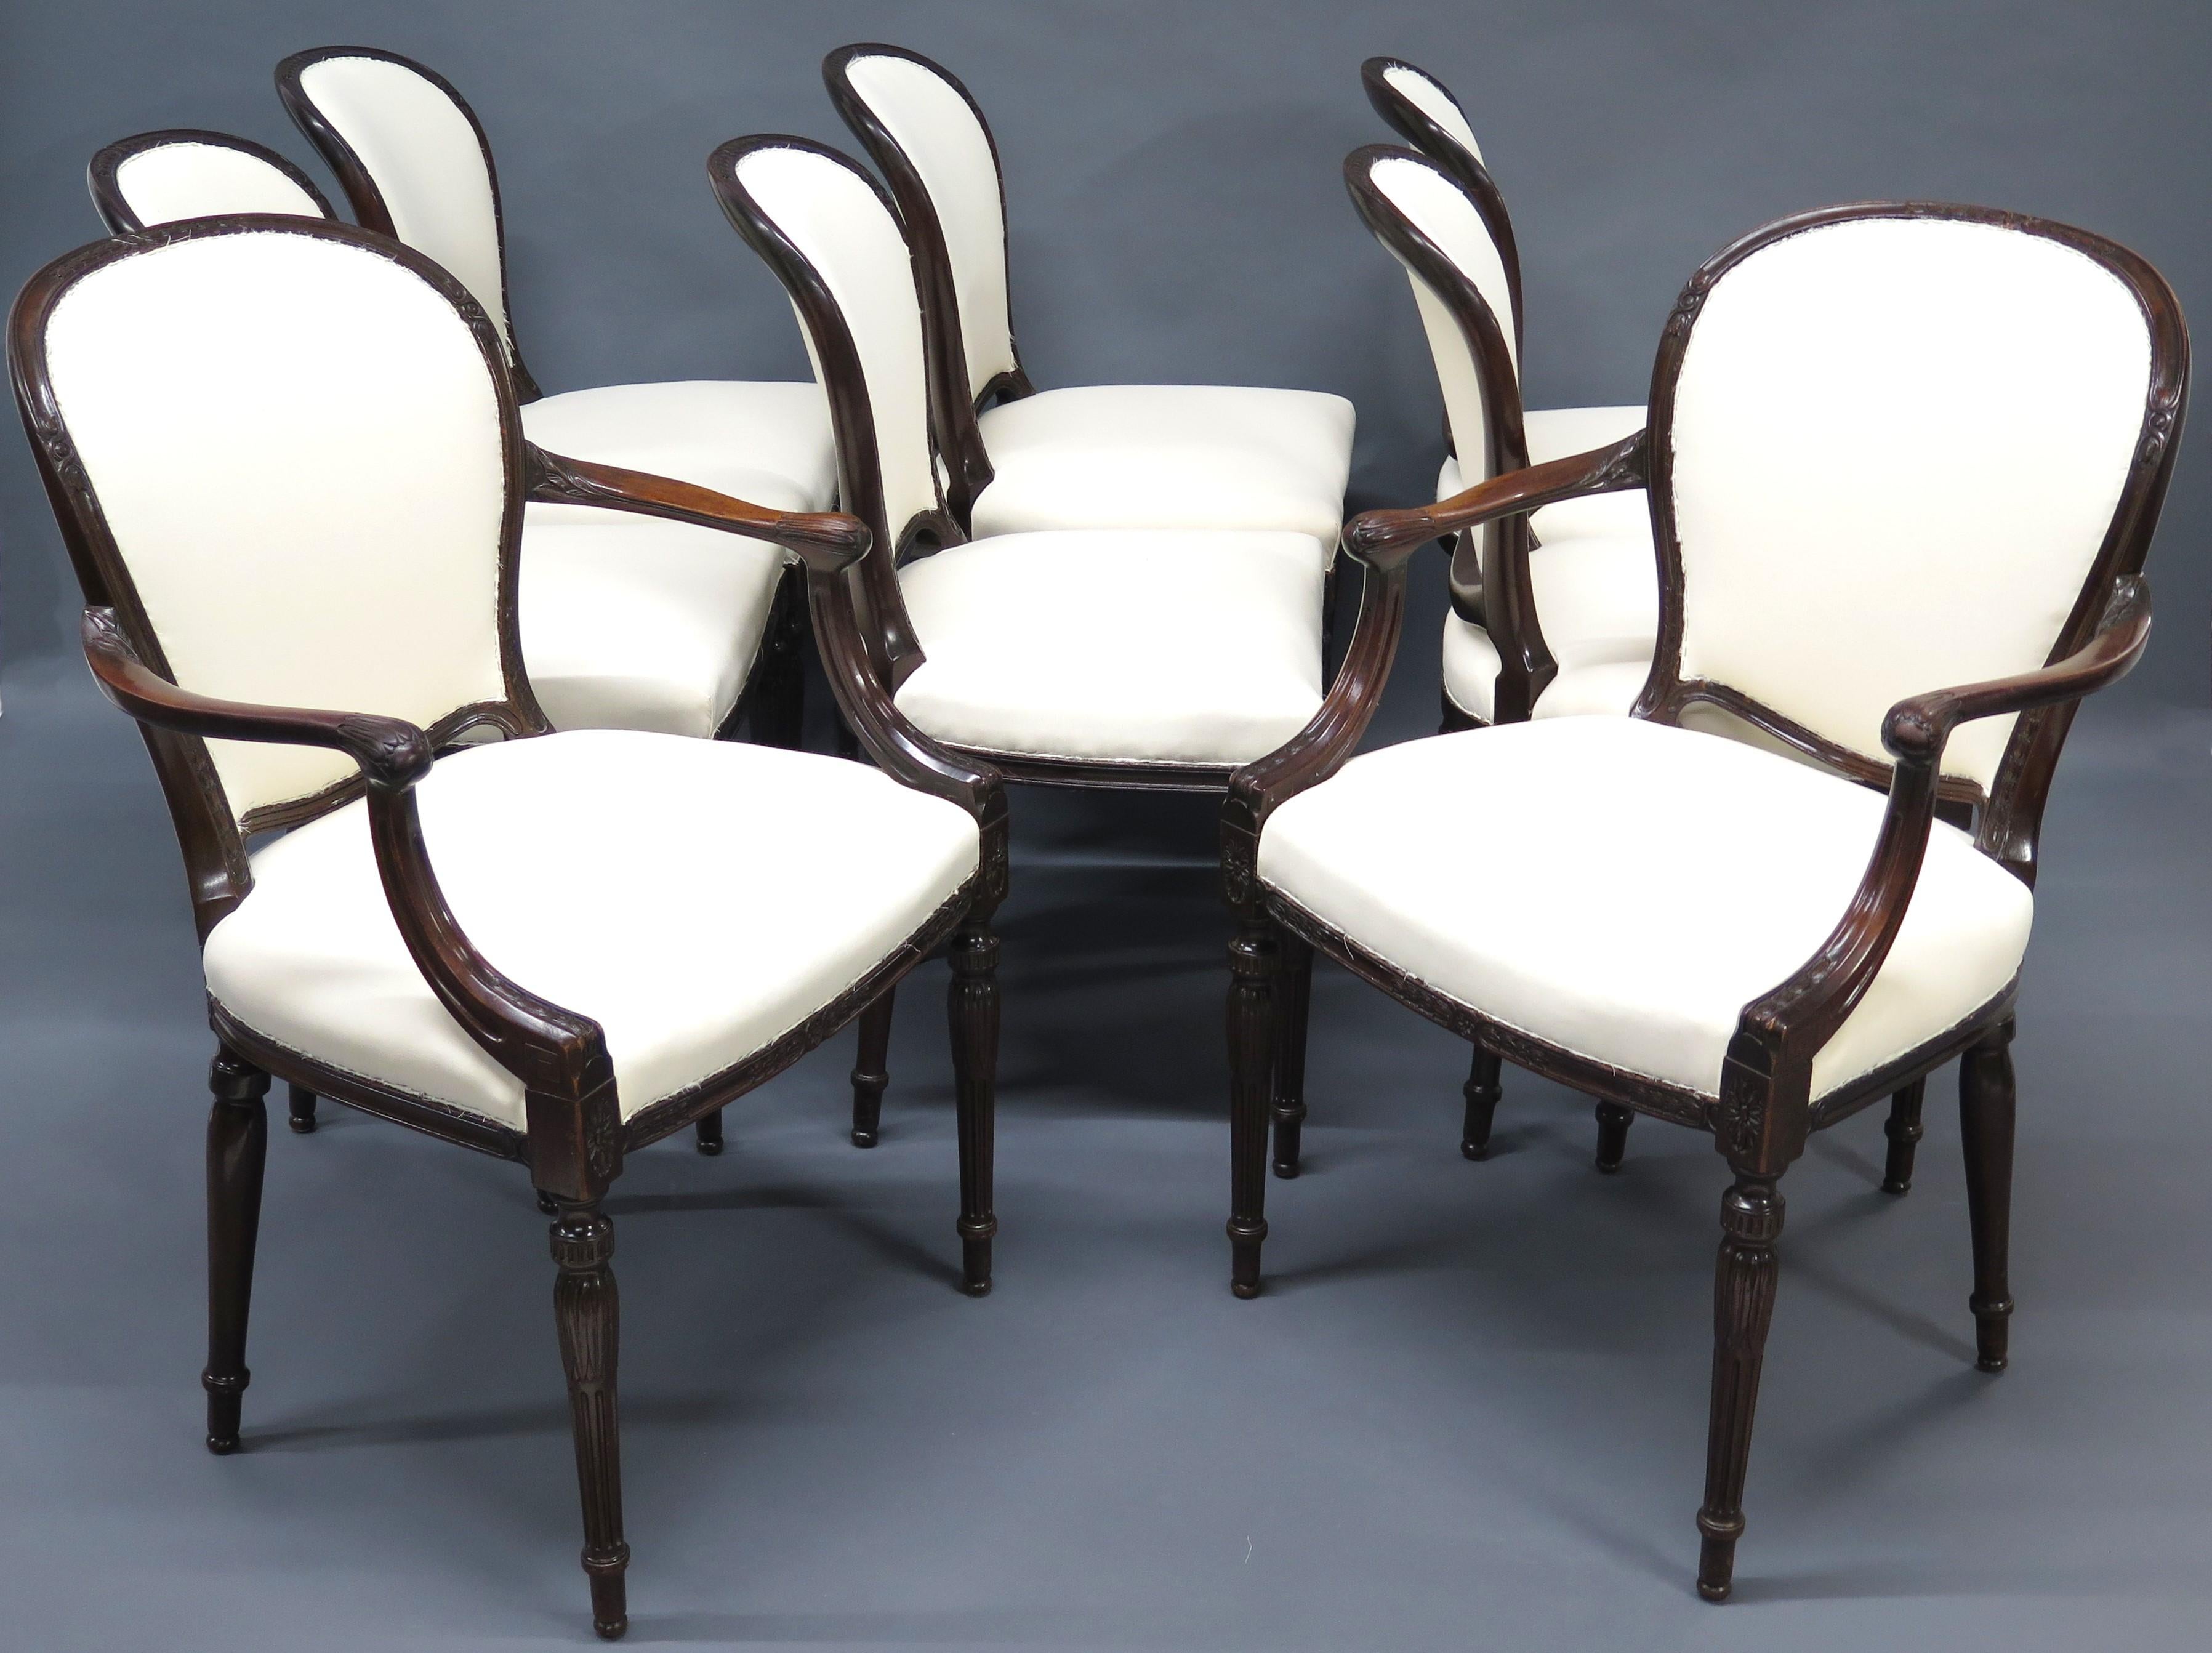 eine Reihe von acht (8) George III Mahagoni Esszimmerstühle, 6 Seitenstühle und 2 Ellbogen Stühle, gepolstert in Musselin, bereit für die Show Tuch, gedreht geriffelten Beinen. England. um 1800

MASSNAHMEN:

34,75